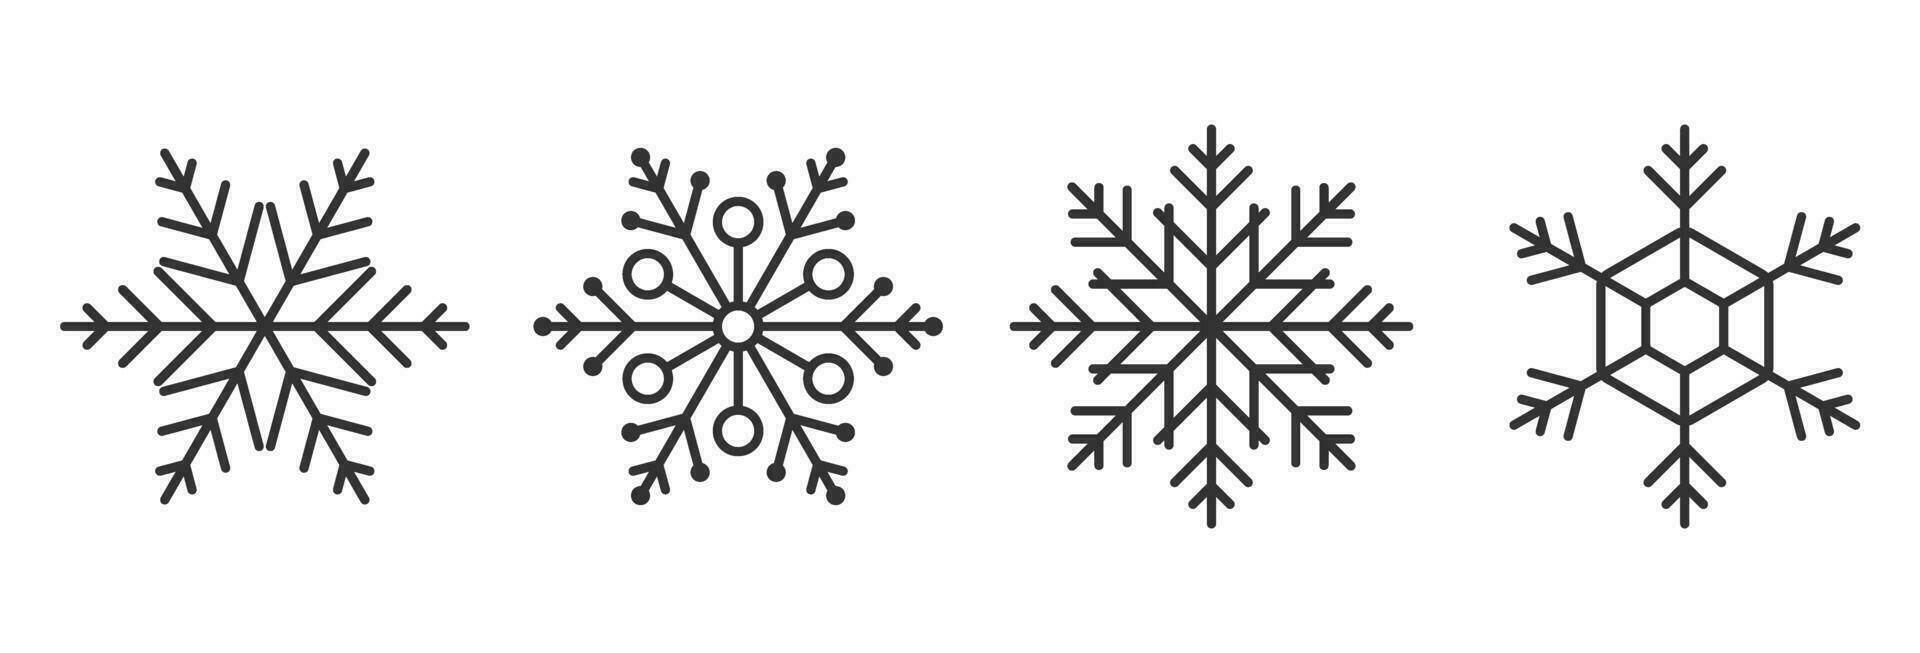 Schnee Symbol zum Weihnachten und Neu Jahr im Winter vektor